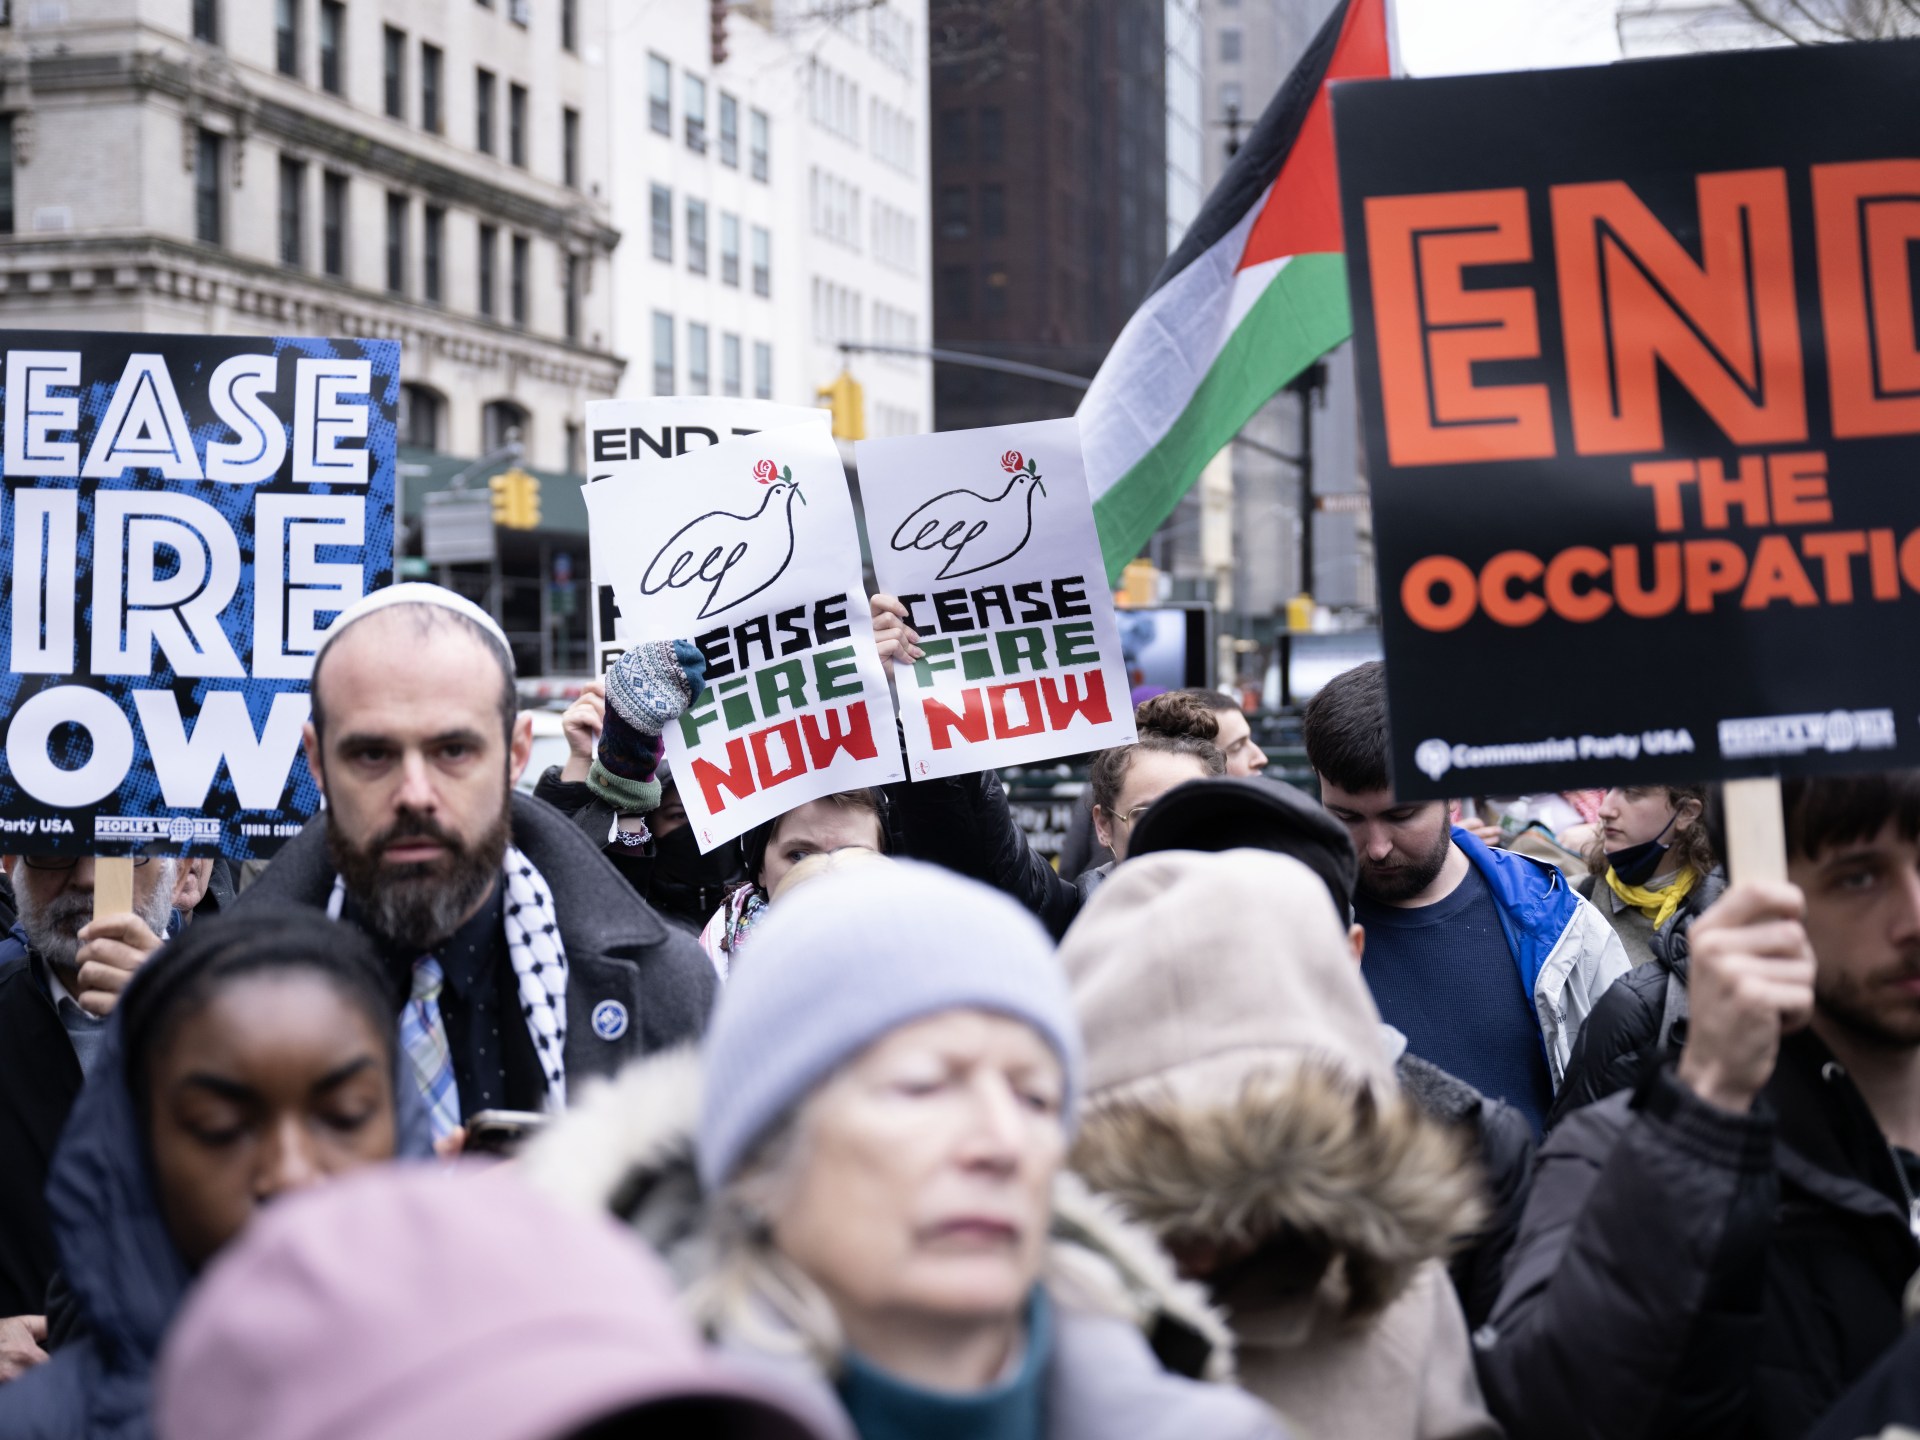 بالصور.. مظاهرة مؤيدة لفلسطين بنيويورك لـ24 ساعة متواصلة | أخبار – البوكس نيوز